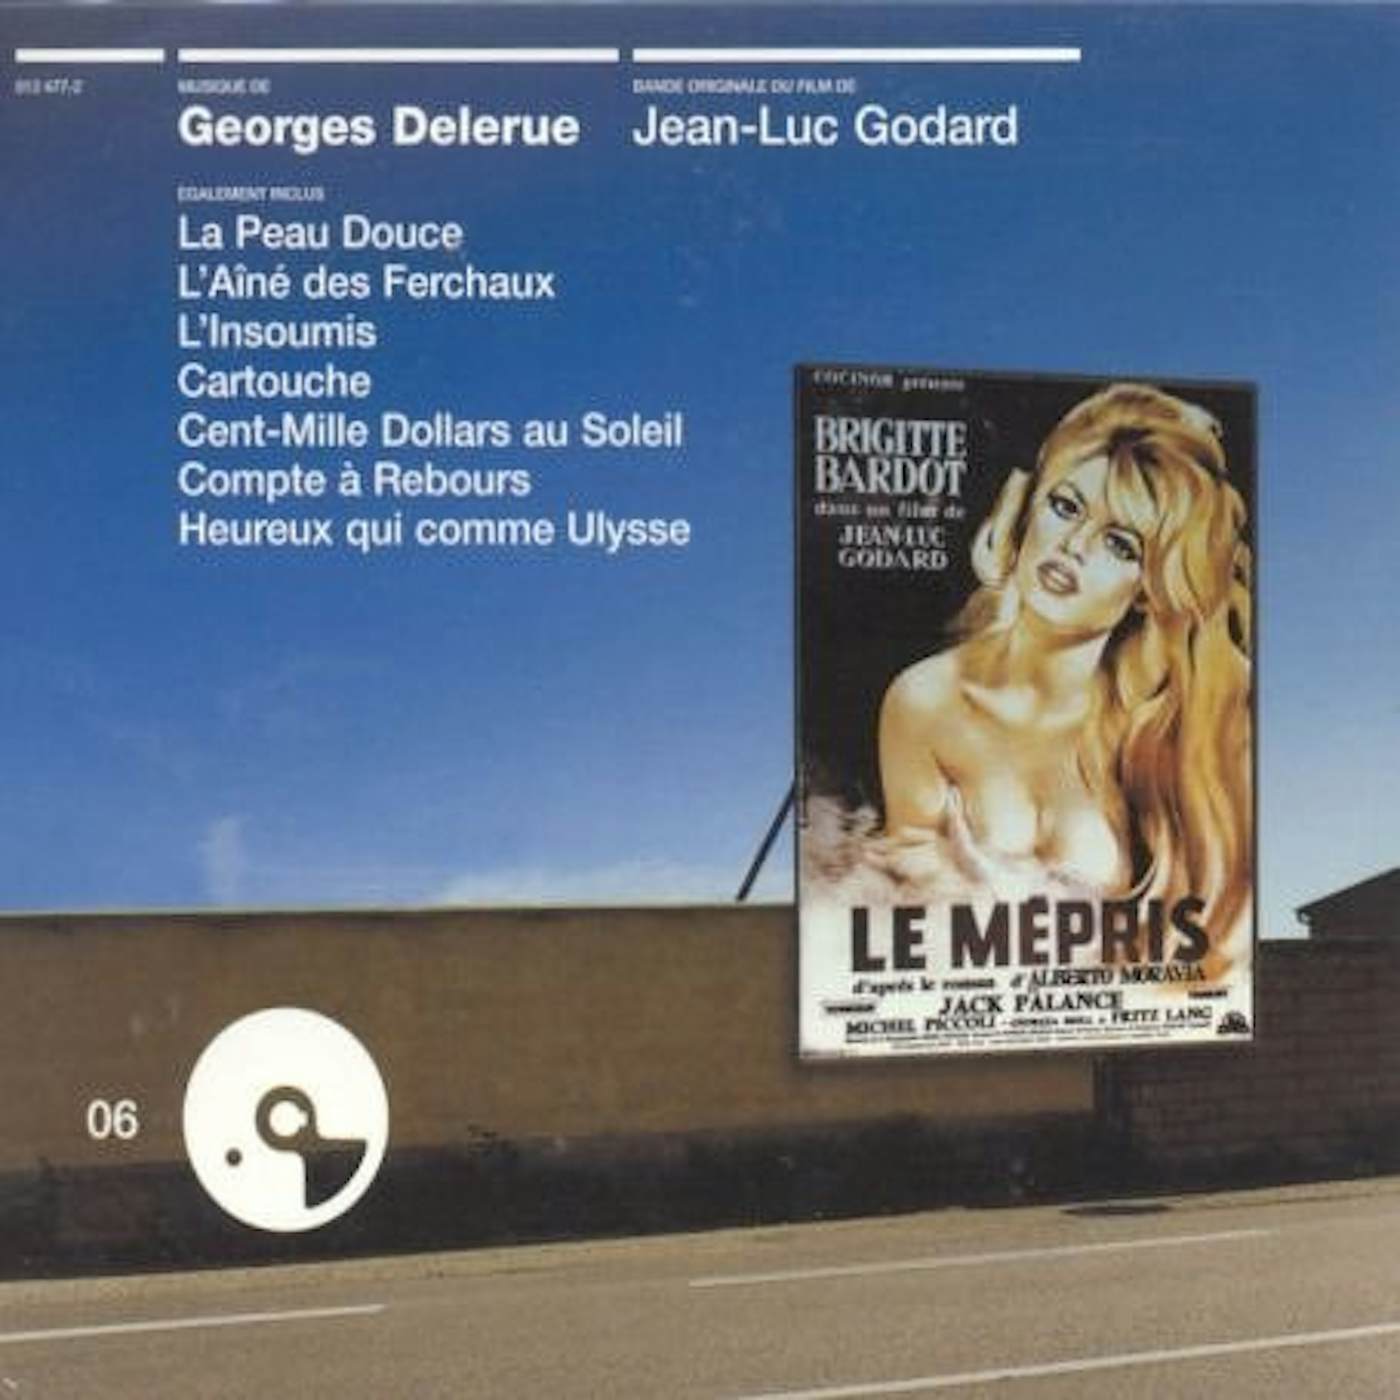 Georges Delerue LE MEPRS CD